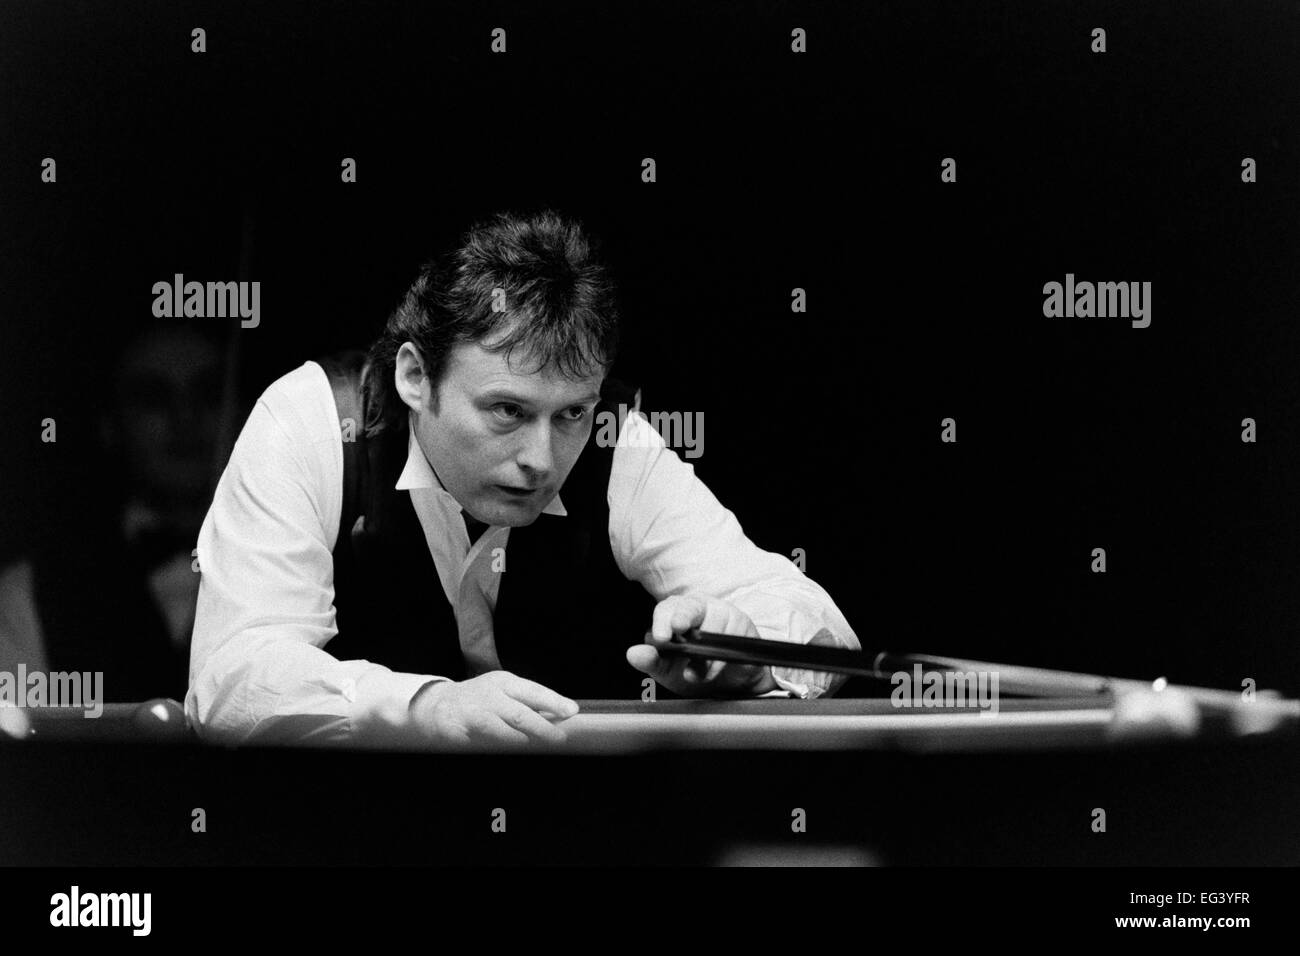 Jimmy White, le joueur professionnel de snooker britannique, surnommé 'la tempête' Banque D'Images